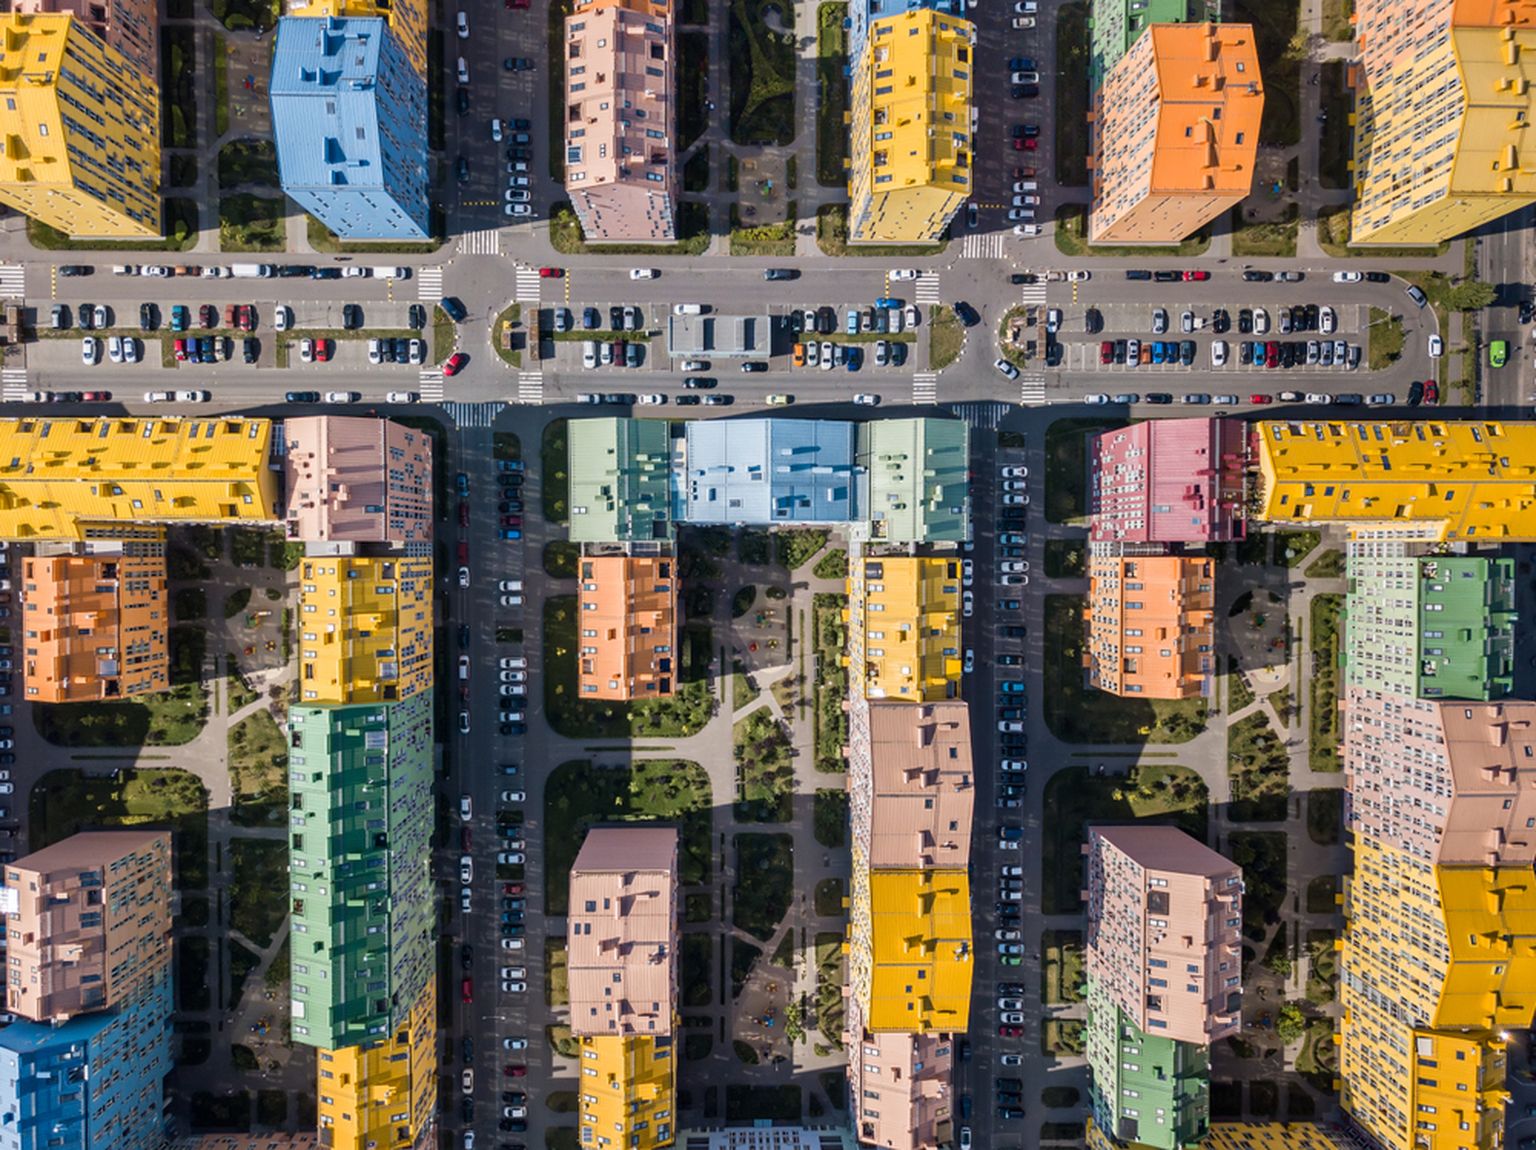 Kiievi äärelinna värvikirevad majad on sümbioos hallist minevikust ja eesseisvast helgest tulevikust.